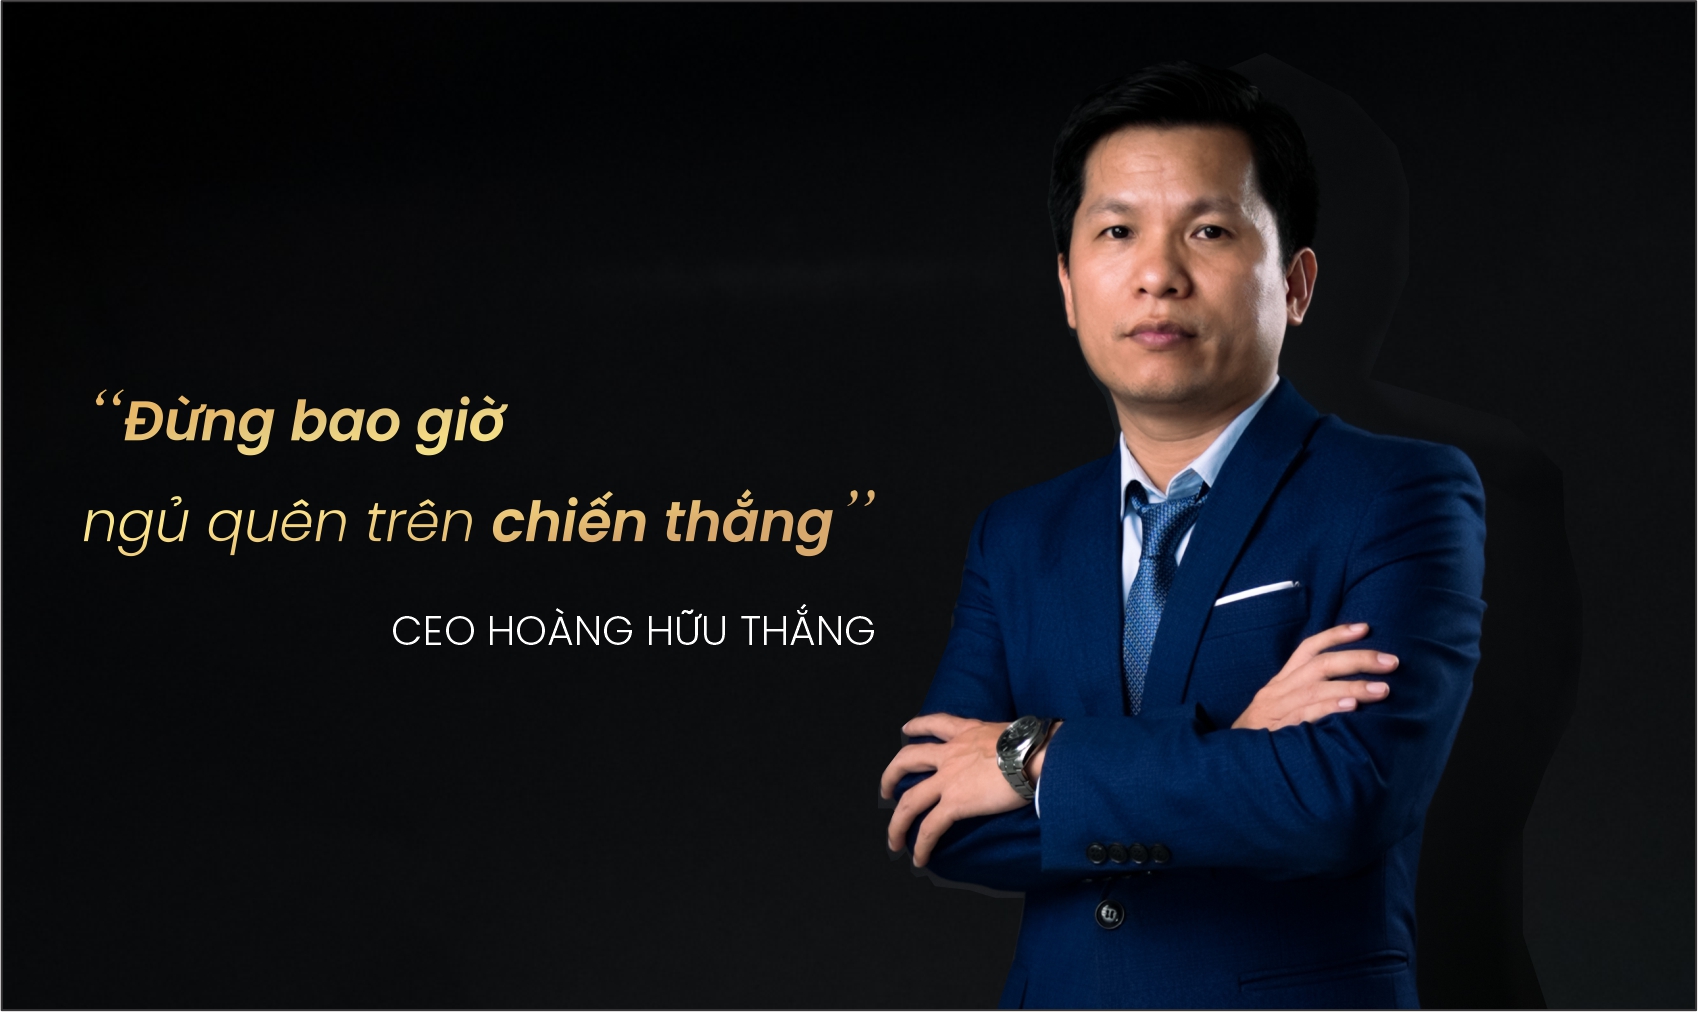 CEO Hoàng Hữu Thắng Đừng bao giờ ngủ quên trên chiến thắng